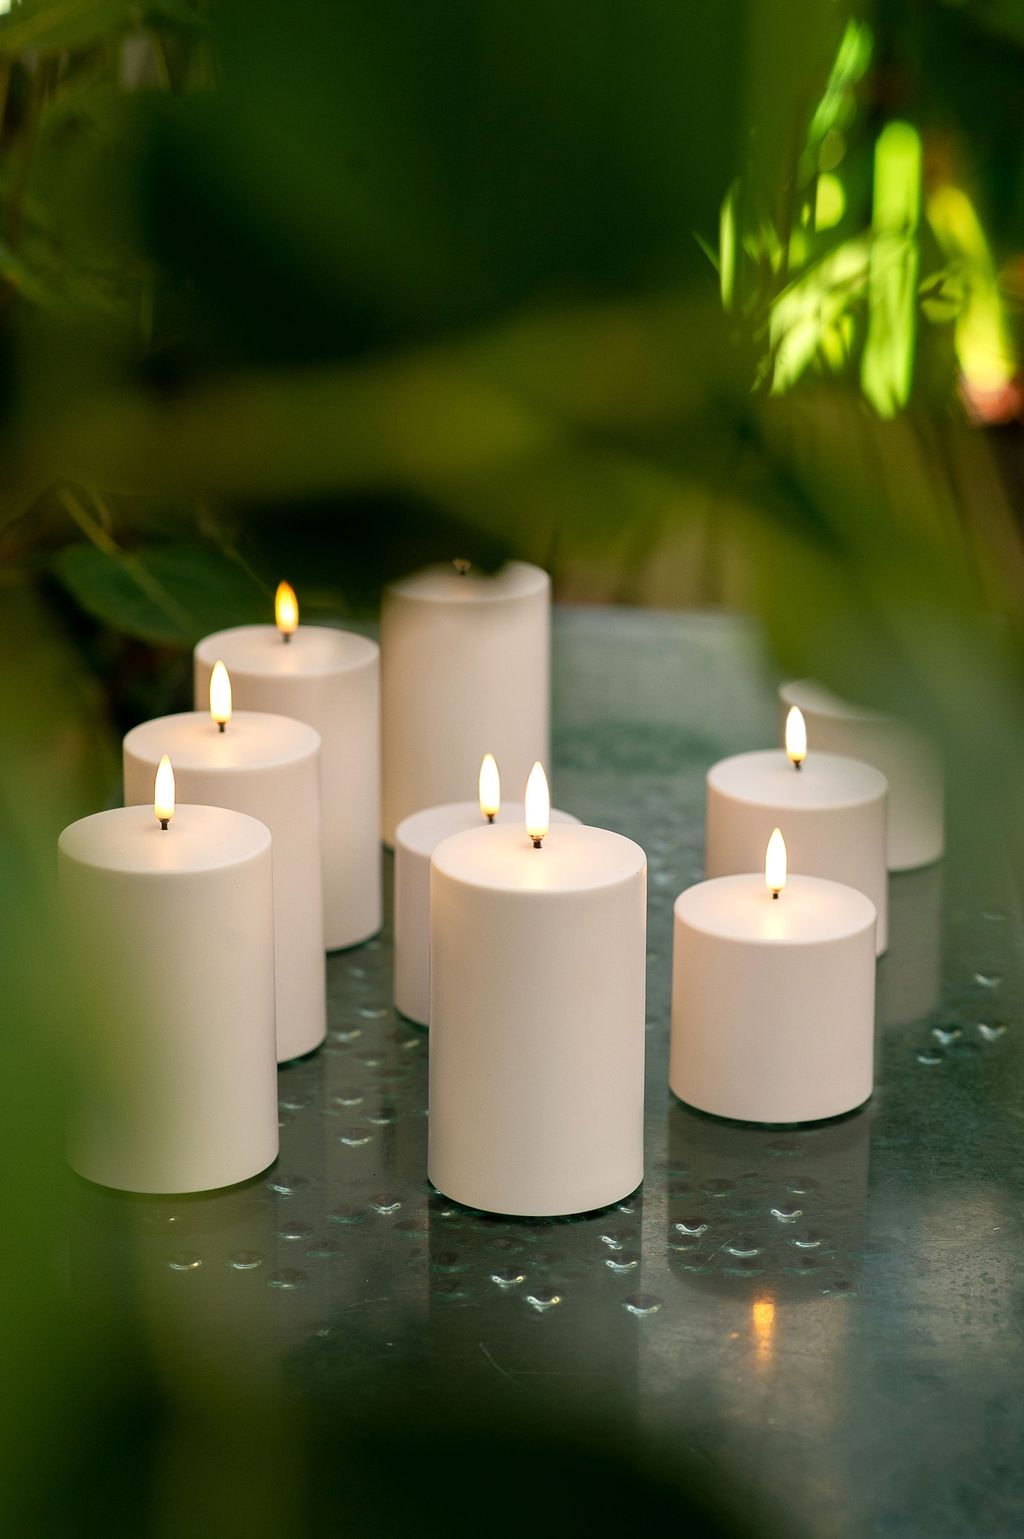 Uyuni Lighting LED Pilier Candle 3 D Flame Øx H 5x7,5 cm, blanc nordique